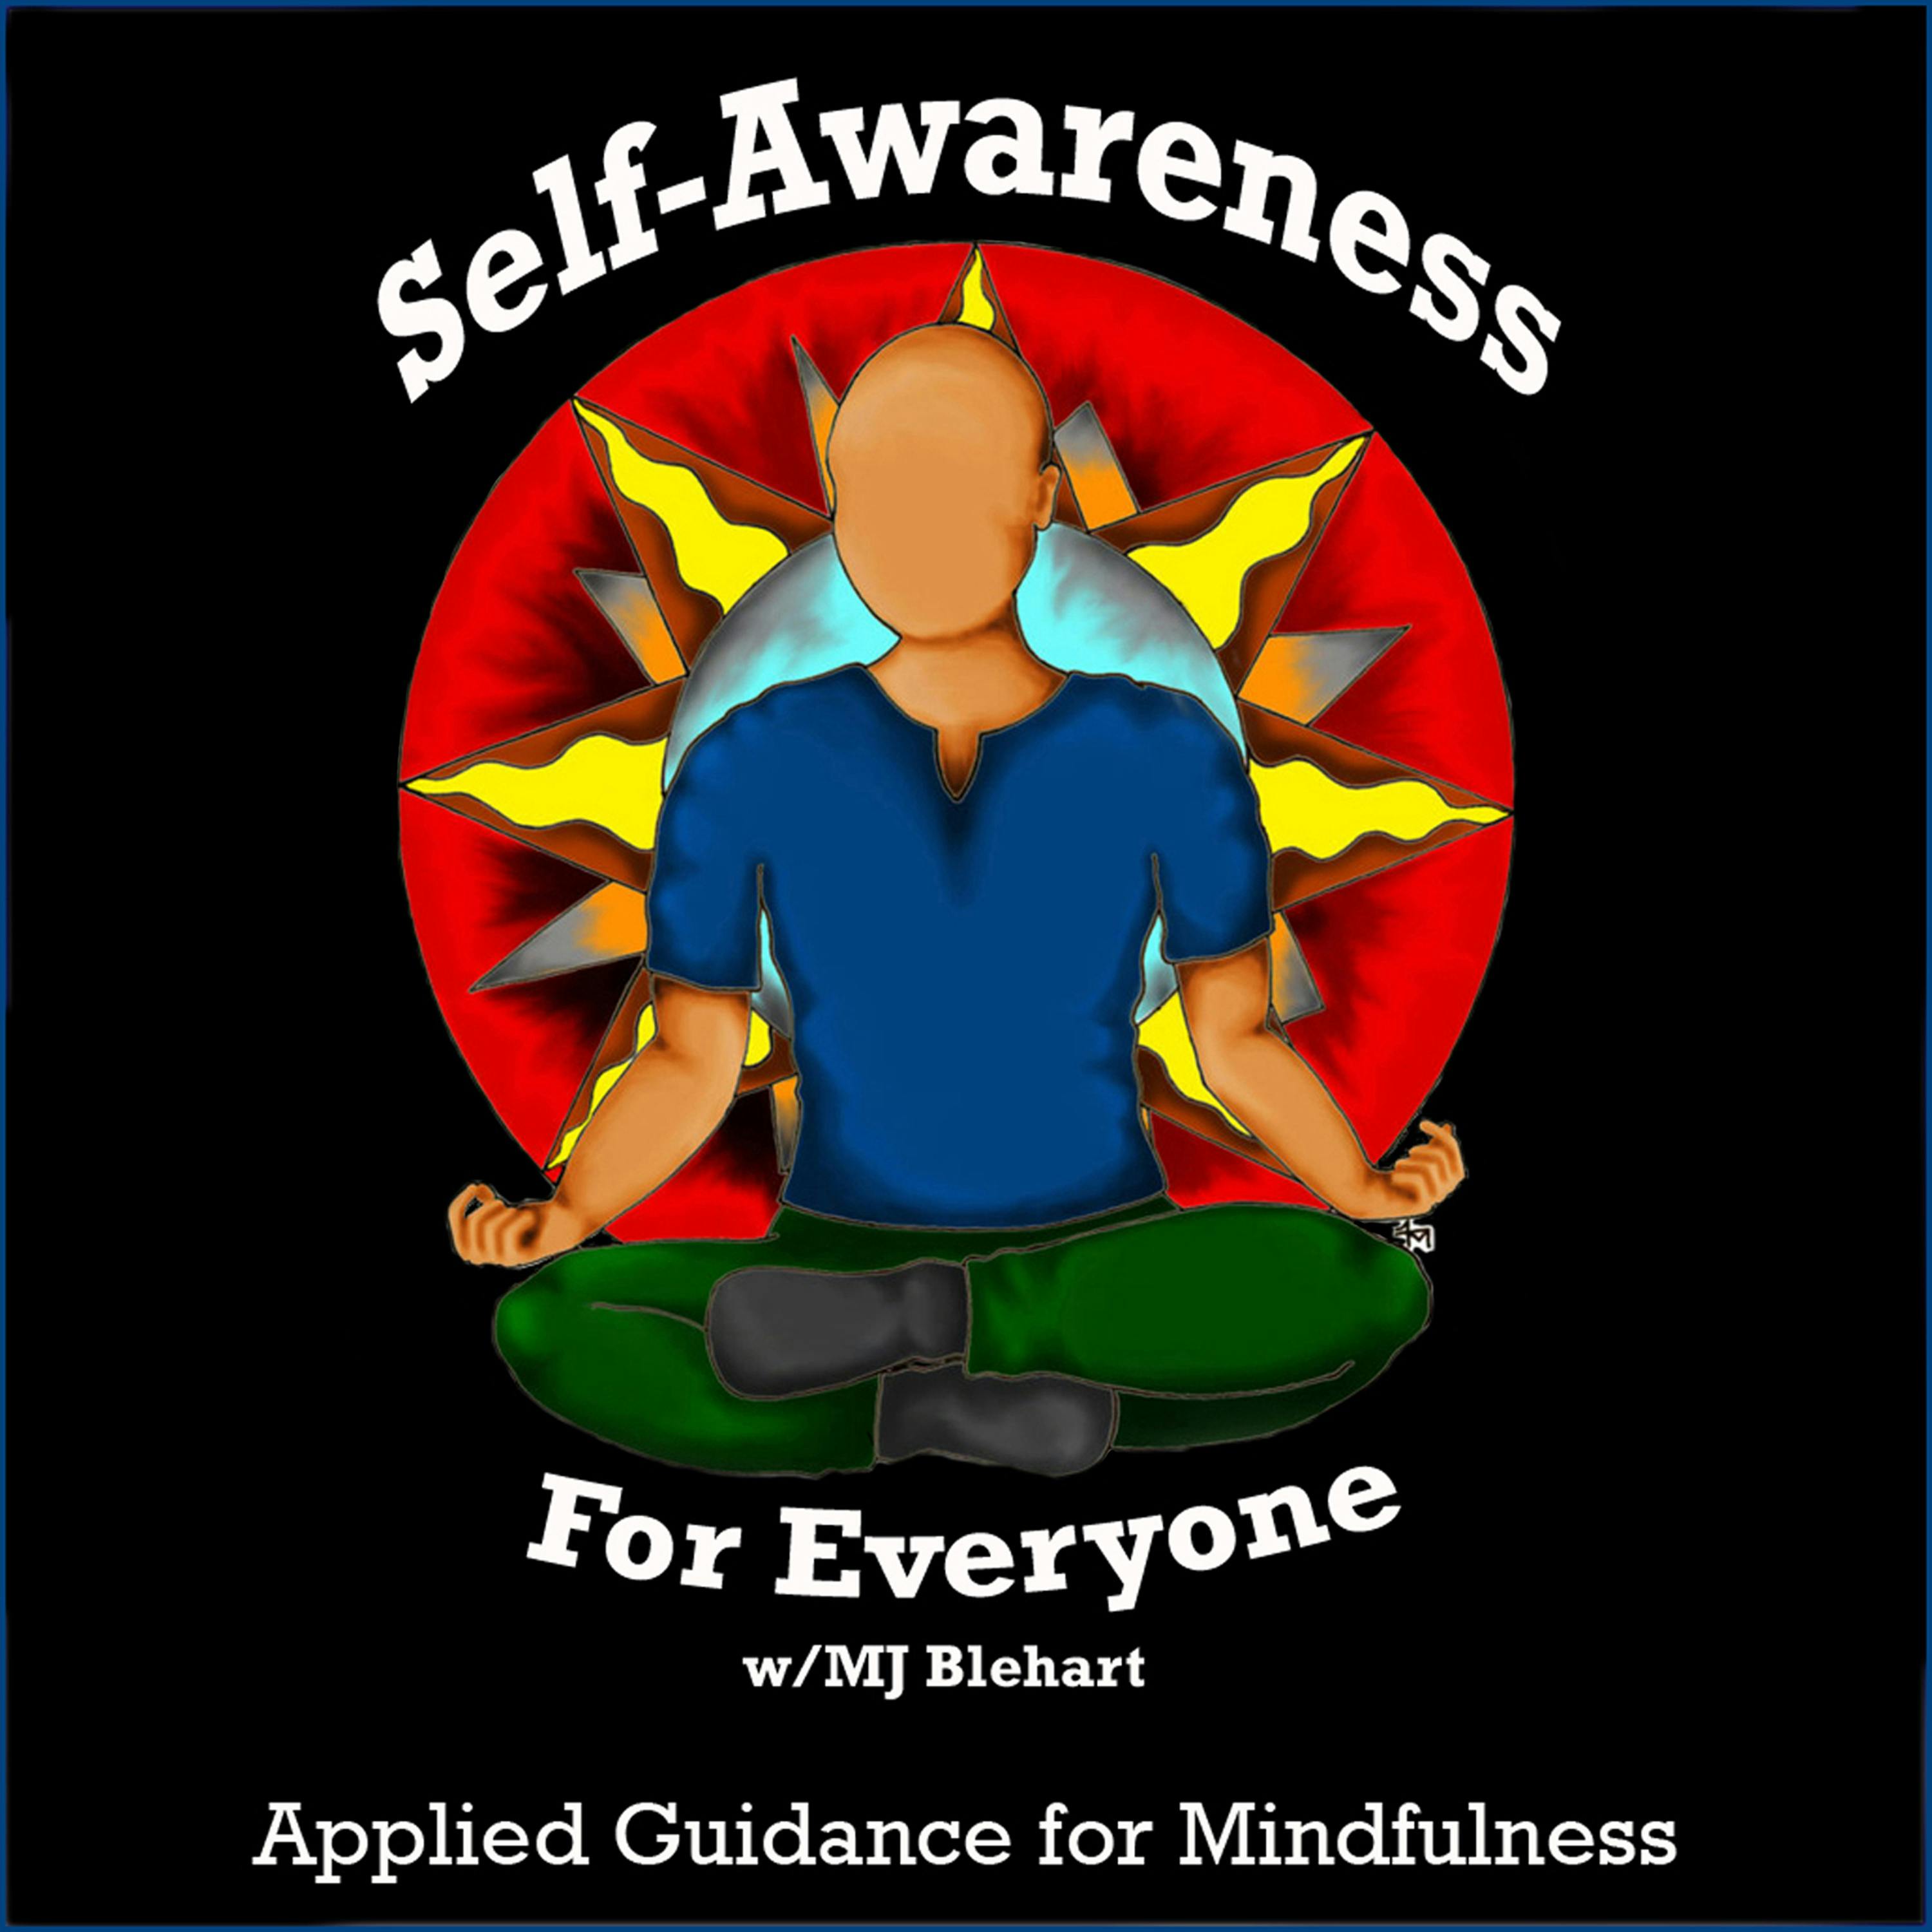 Self-Awareness for Everyone